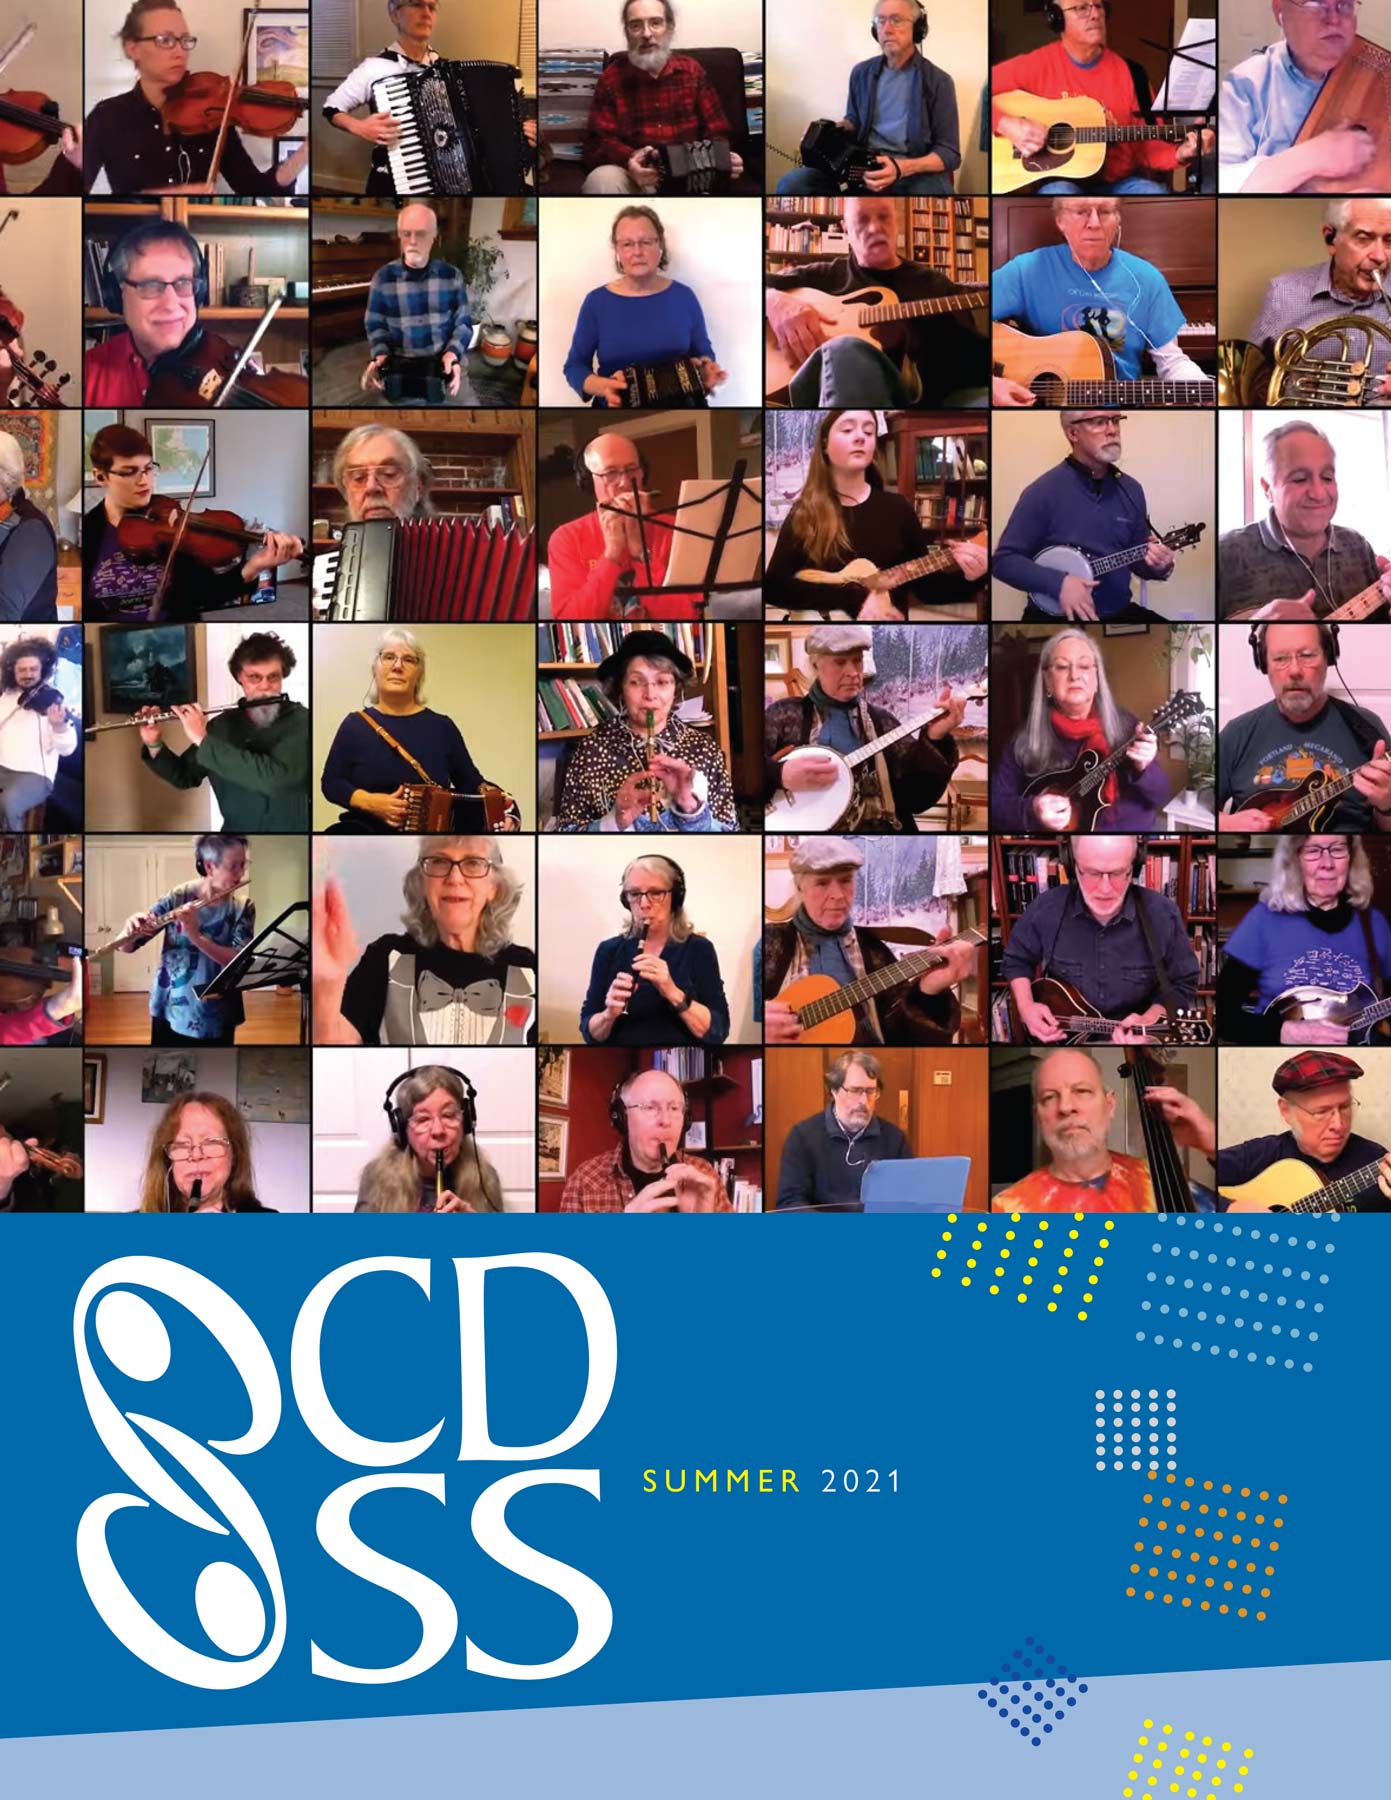 CDSS News, Summer 2021